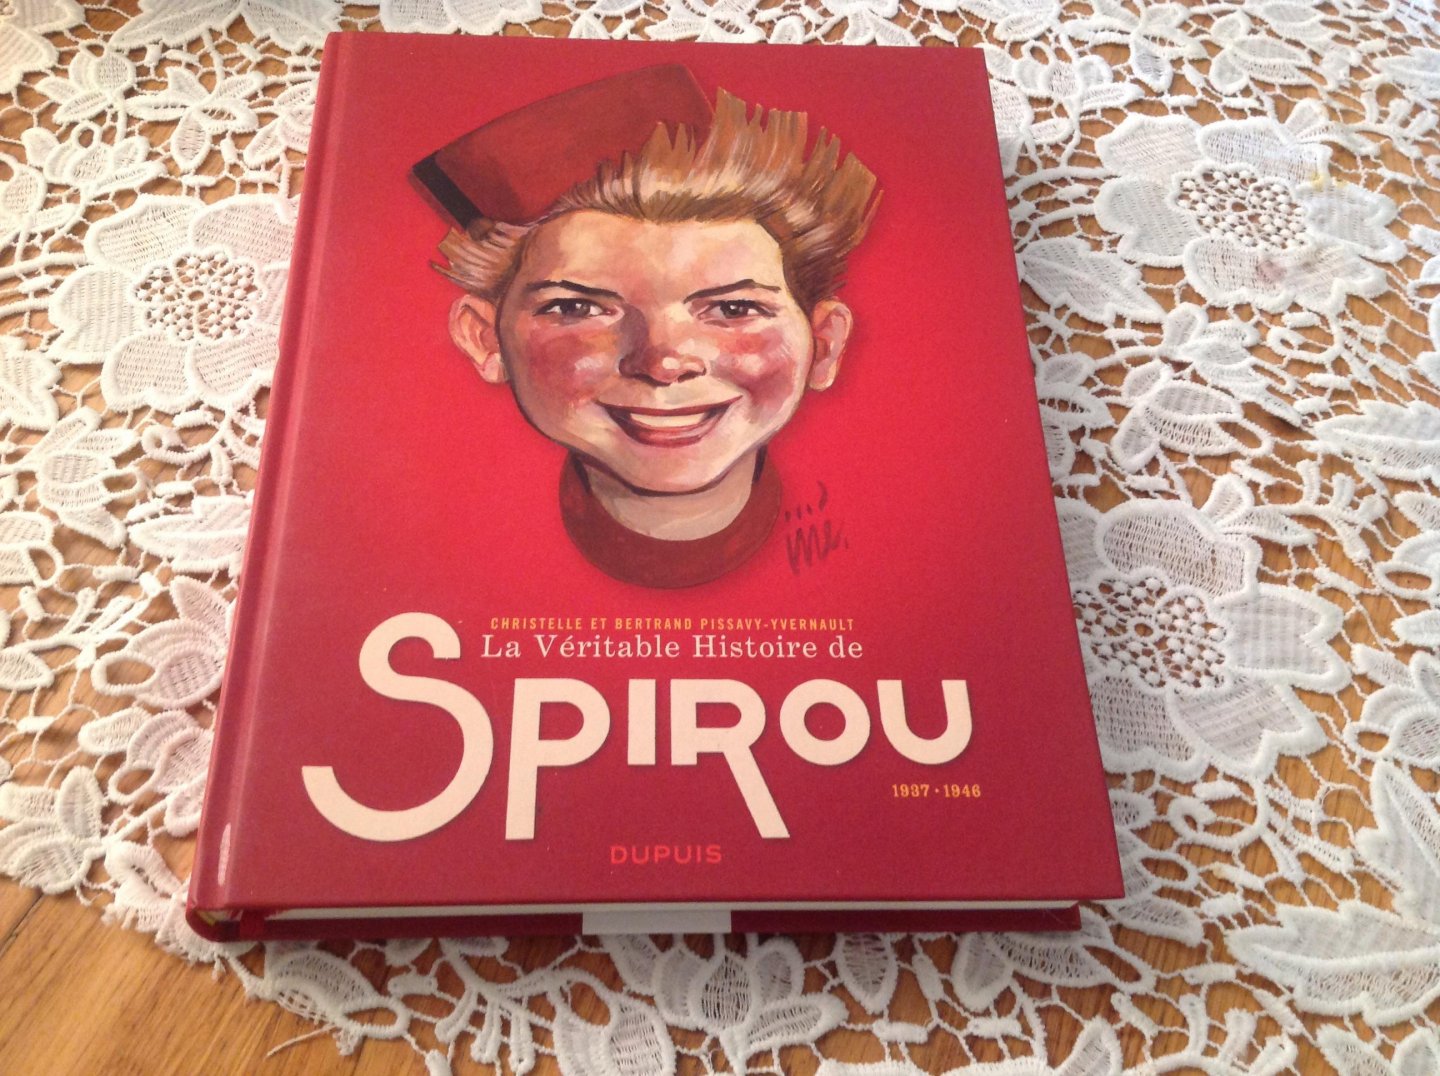  - La Véritable Histoire de Spirou tome 1 1937-1946